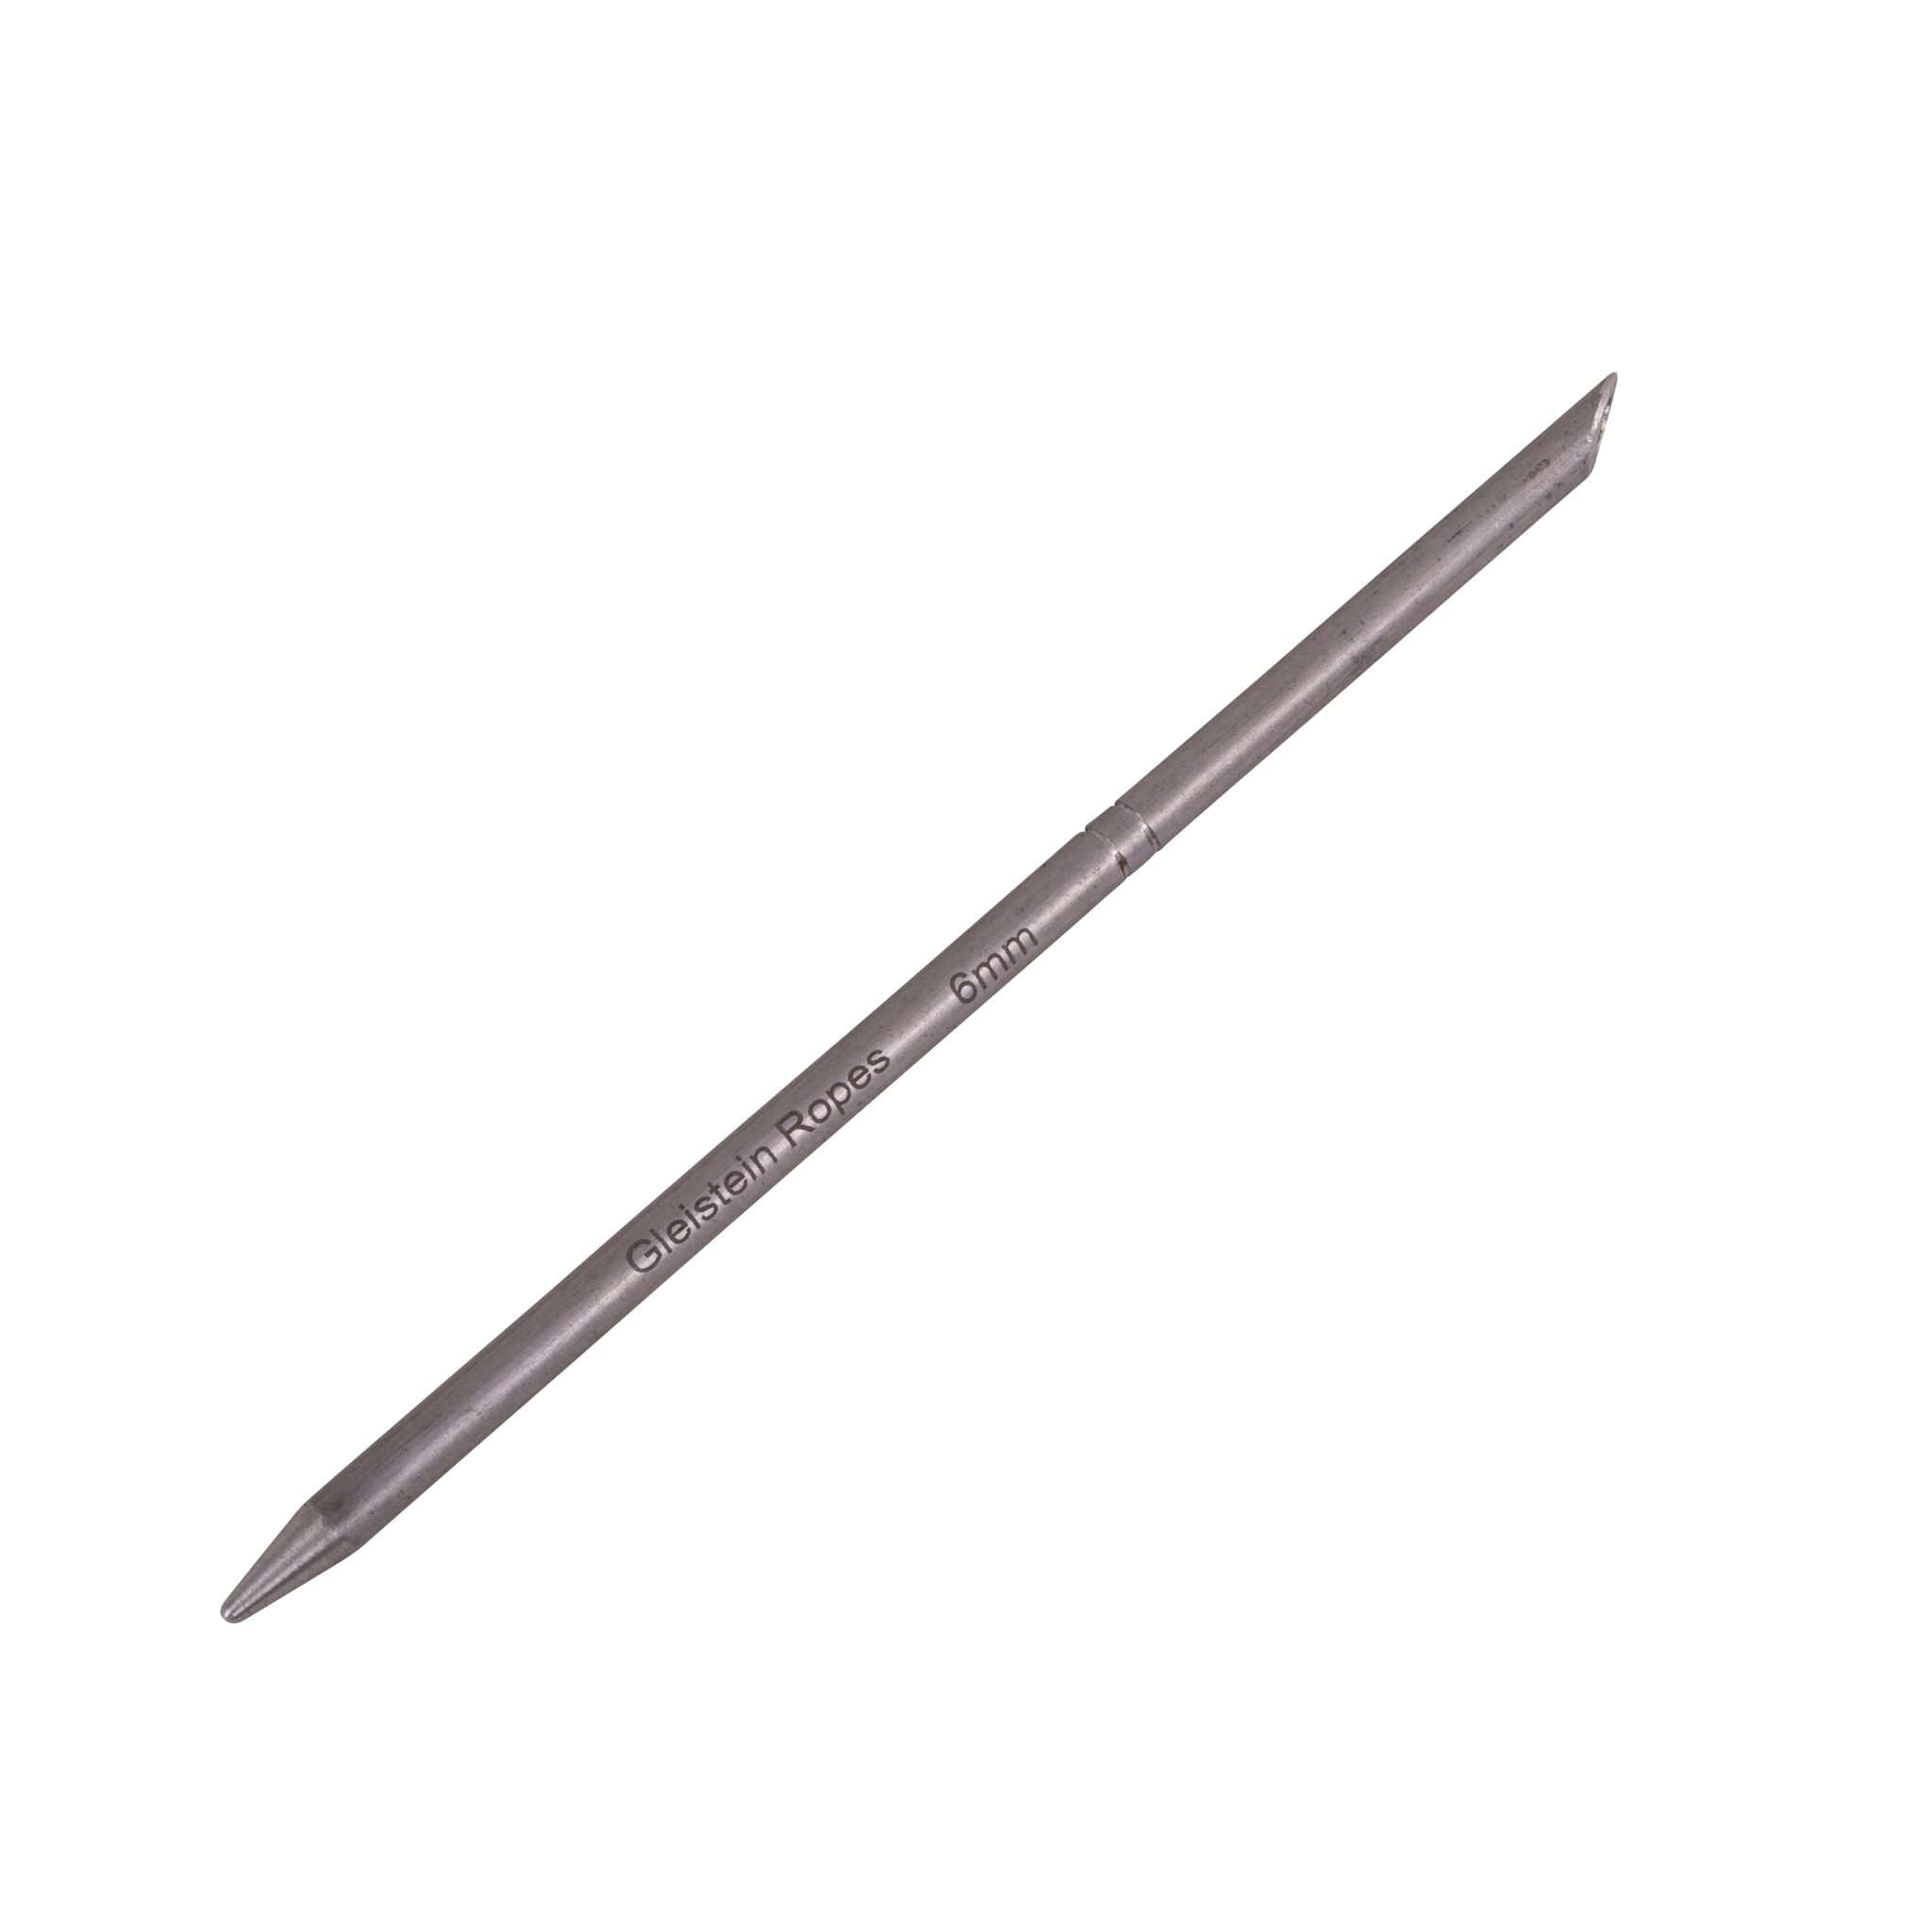 Gleistein splicing needle